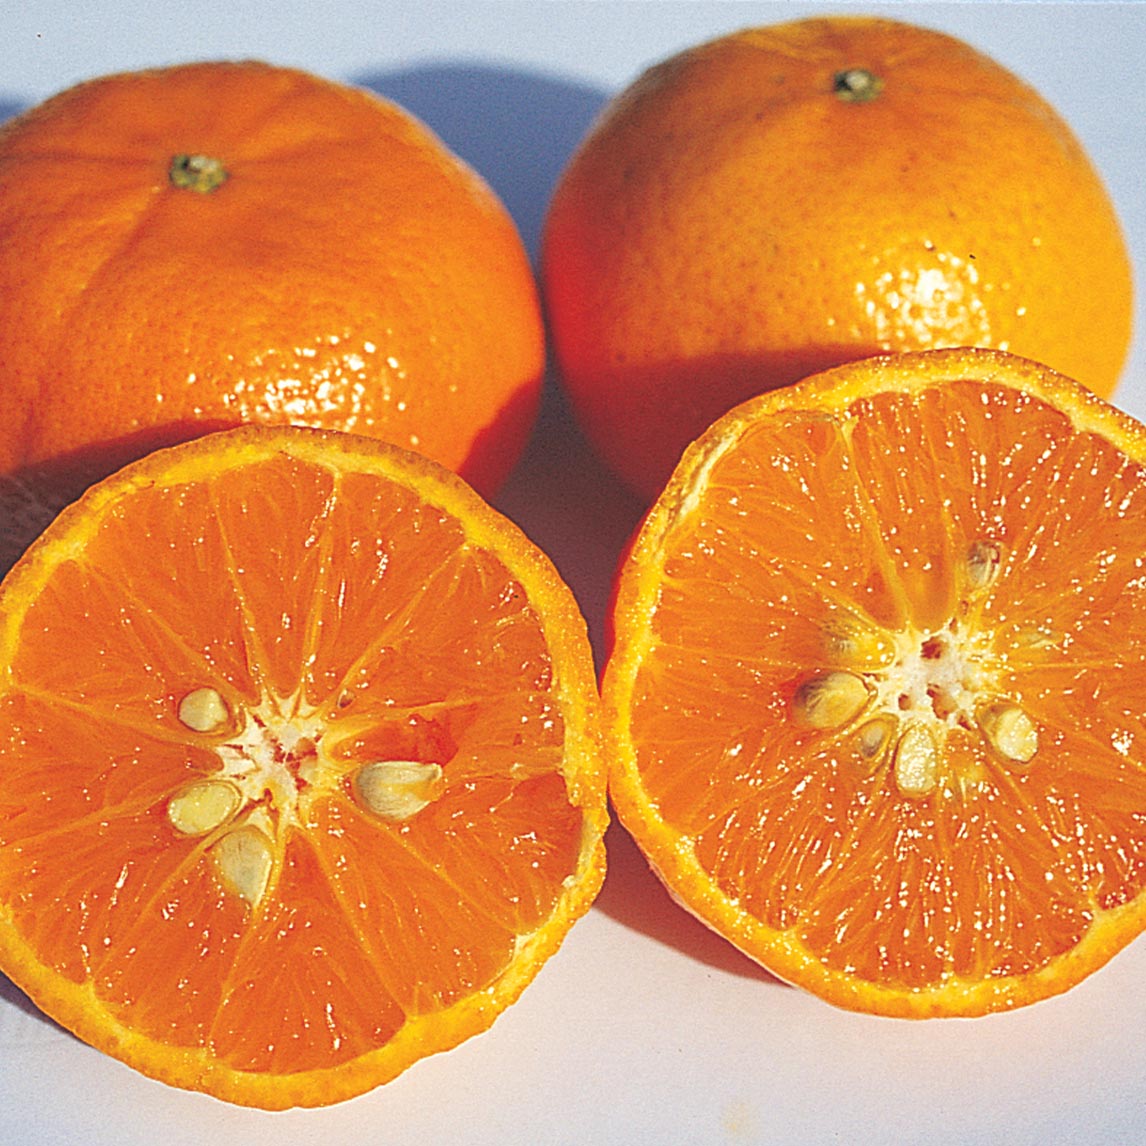 Orange 'Hamlin'